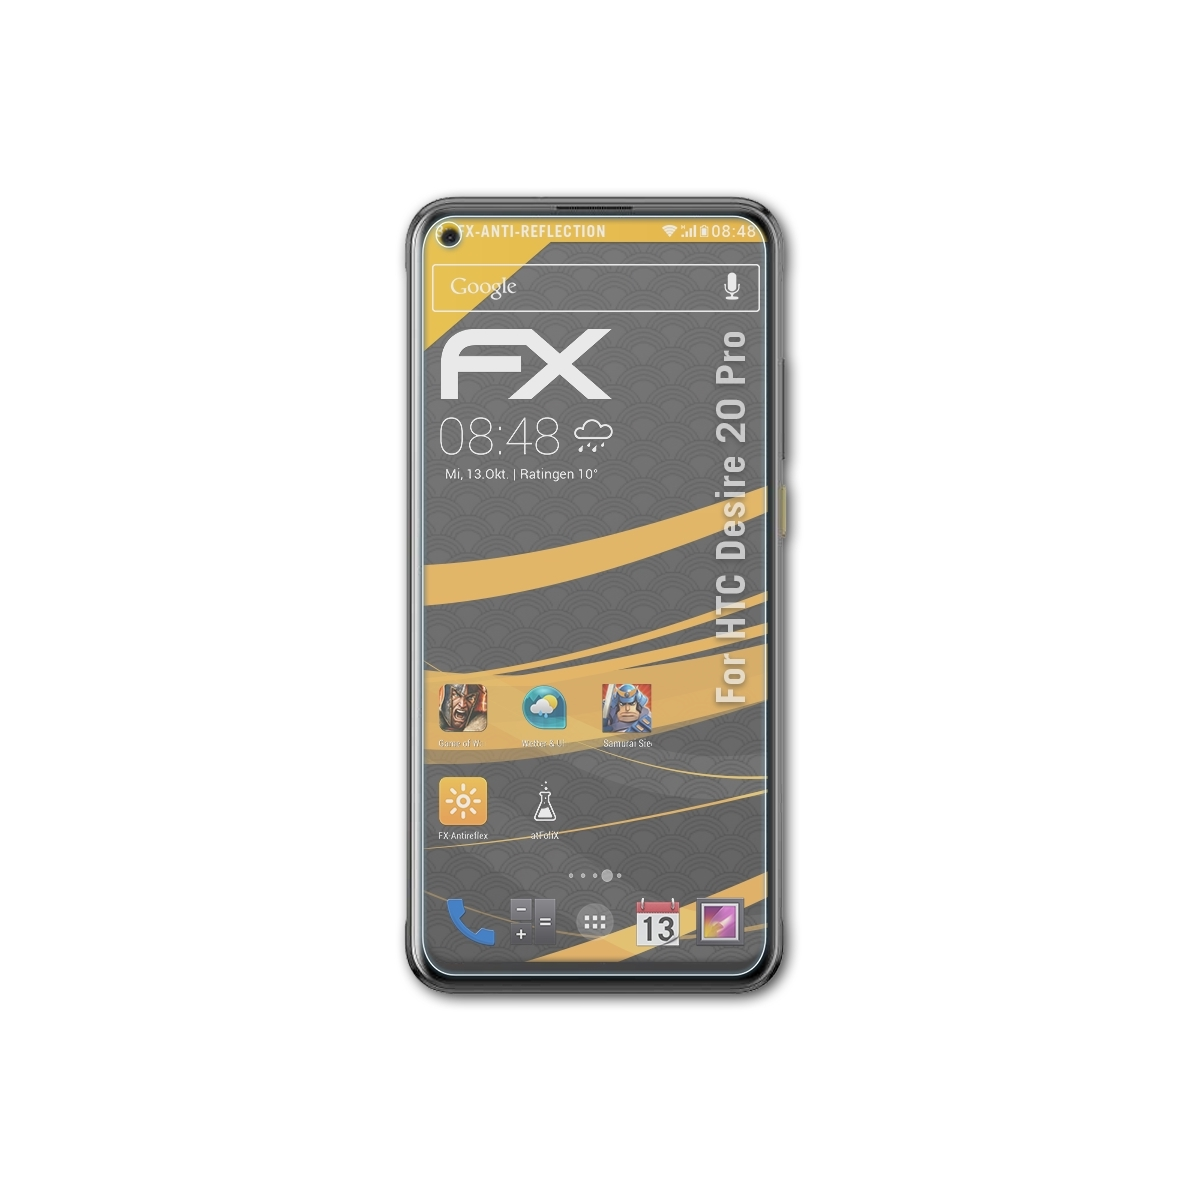 Pro) 20 Displayschutz(für Desire ATFOLIX 3x FX-Antireflex HTC